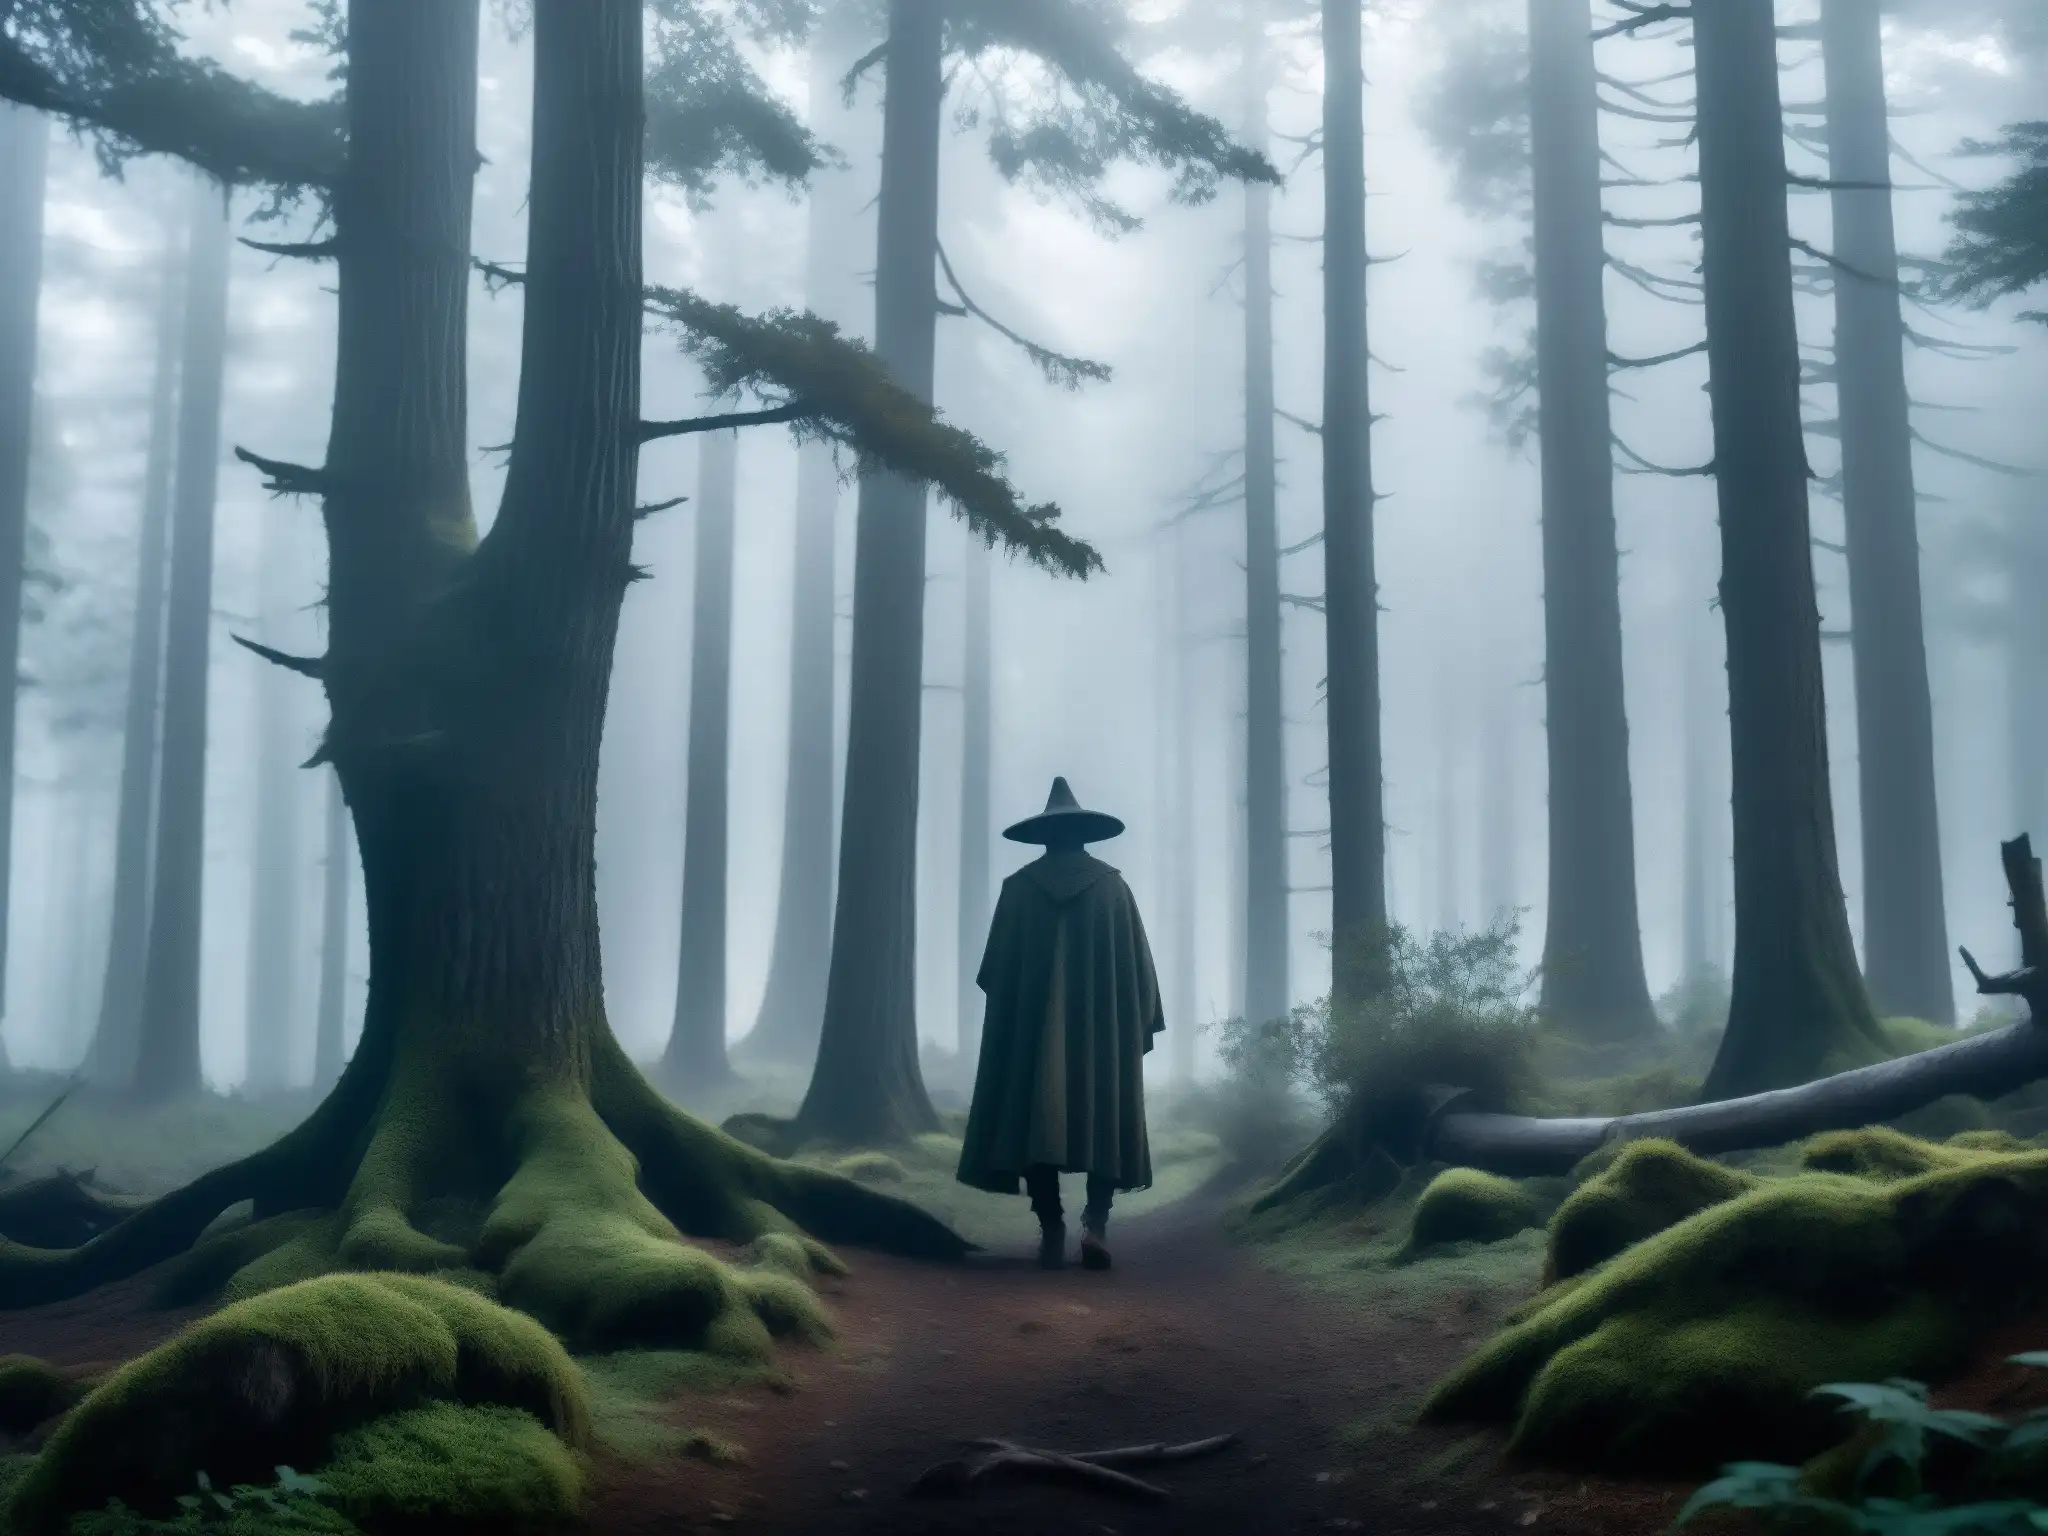 Hechicería en la sierra neoleonesa: un bosque misterioso y etéreo, con árboles retorcidos y una figura envuelta en la niebla